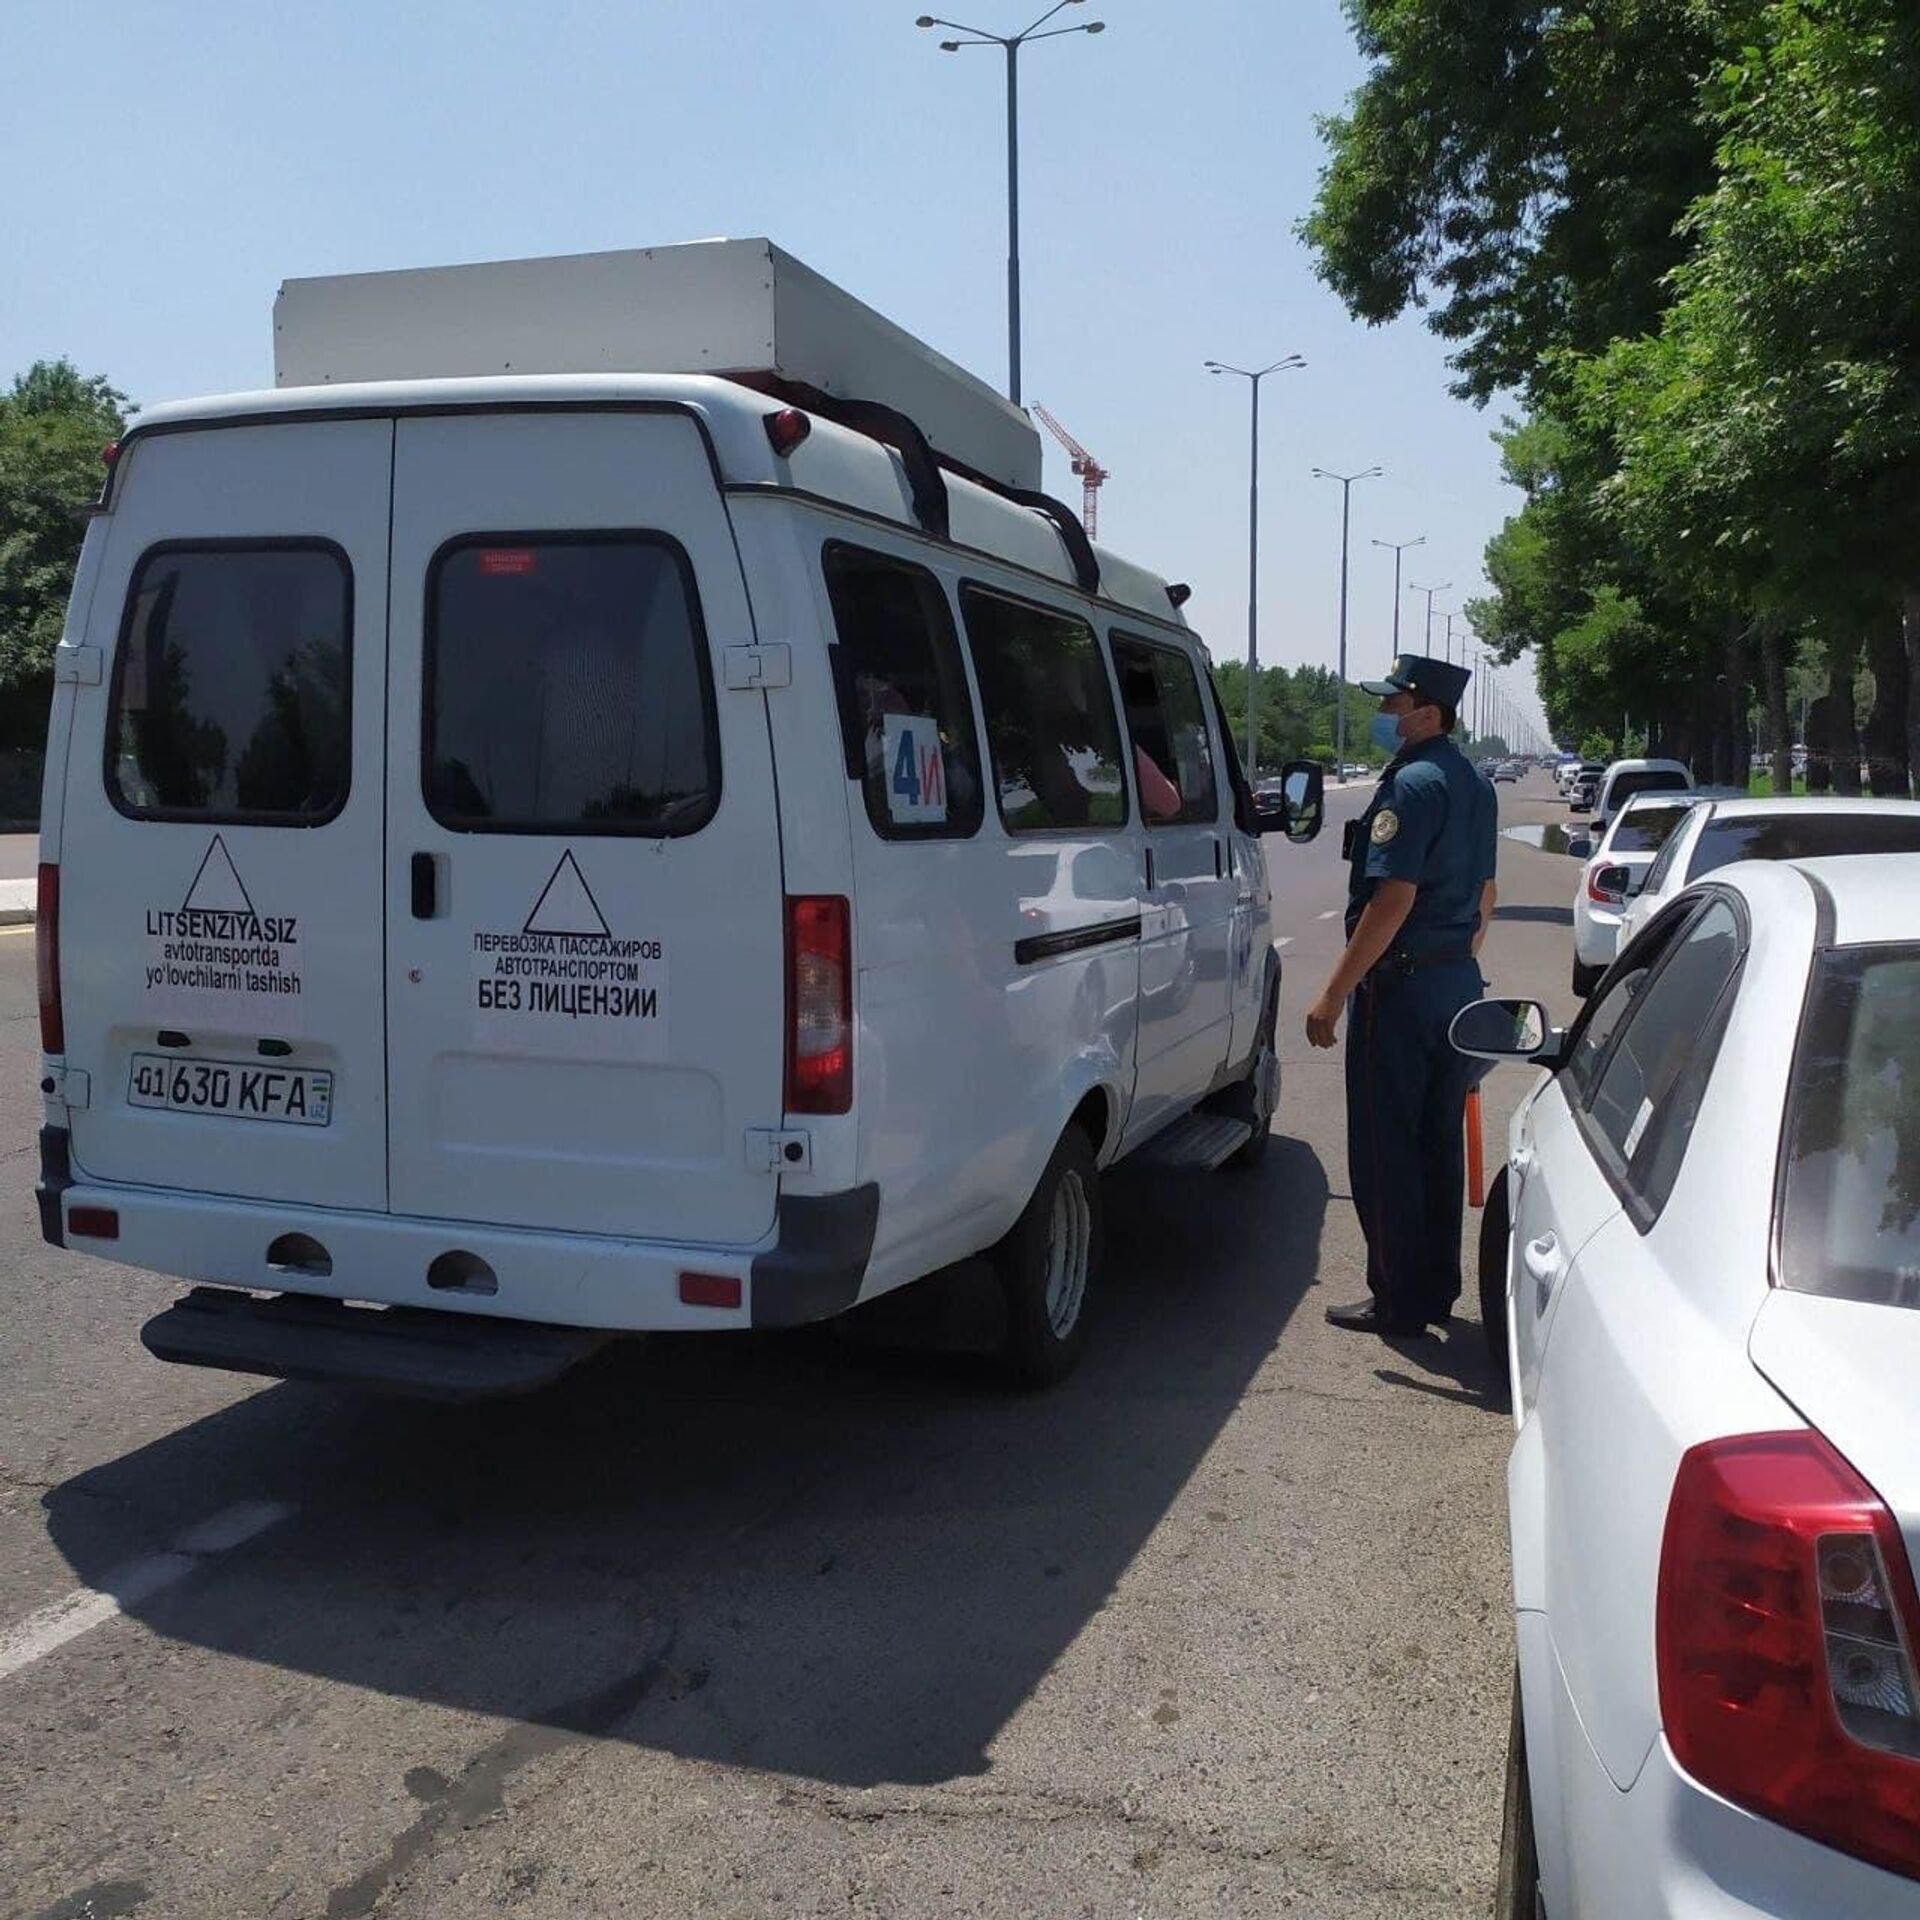 Водителей автобусов в Ташкенте оштрафовали за отсутствие медицинских масок - Sputnik Узбекистан, 1920, 20.05.2021